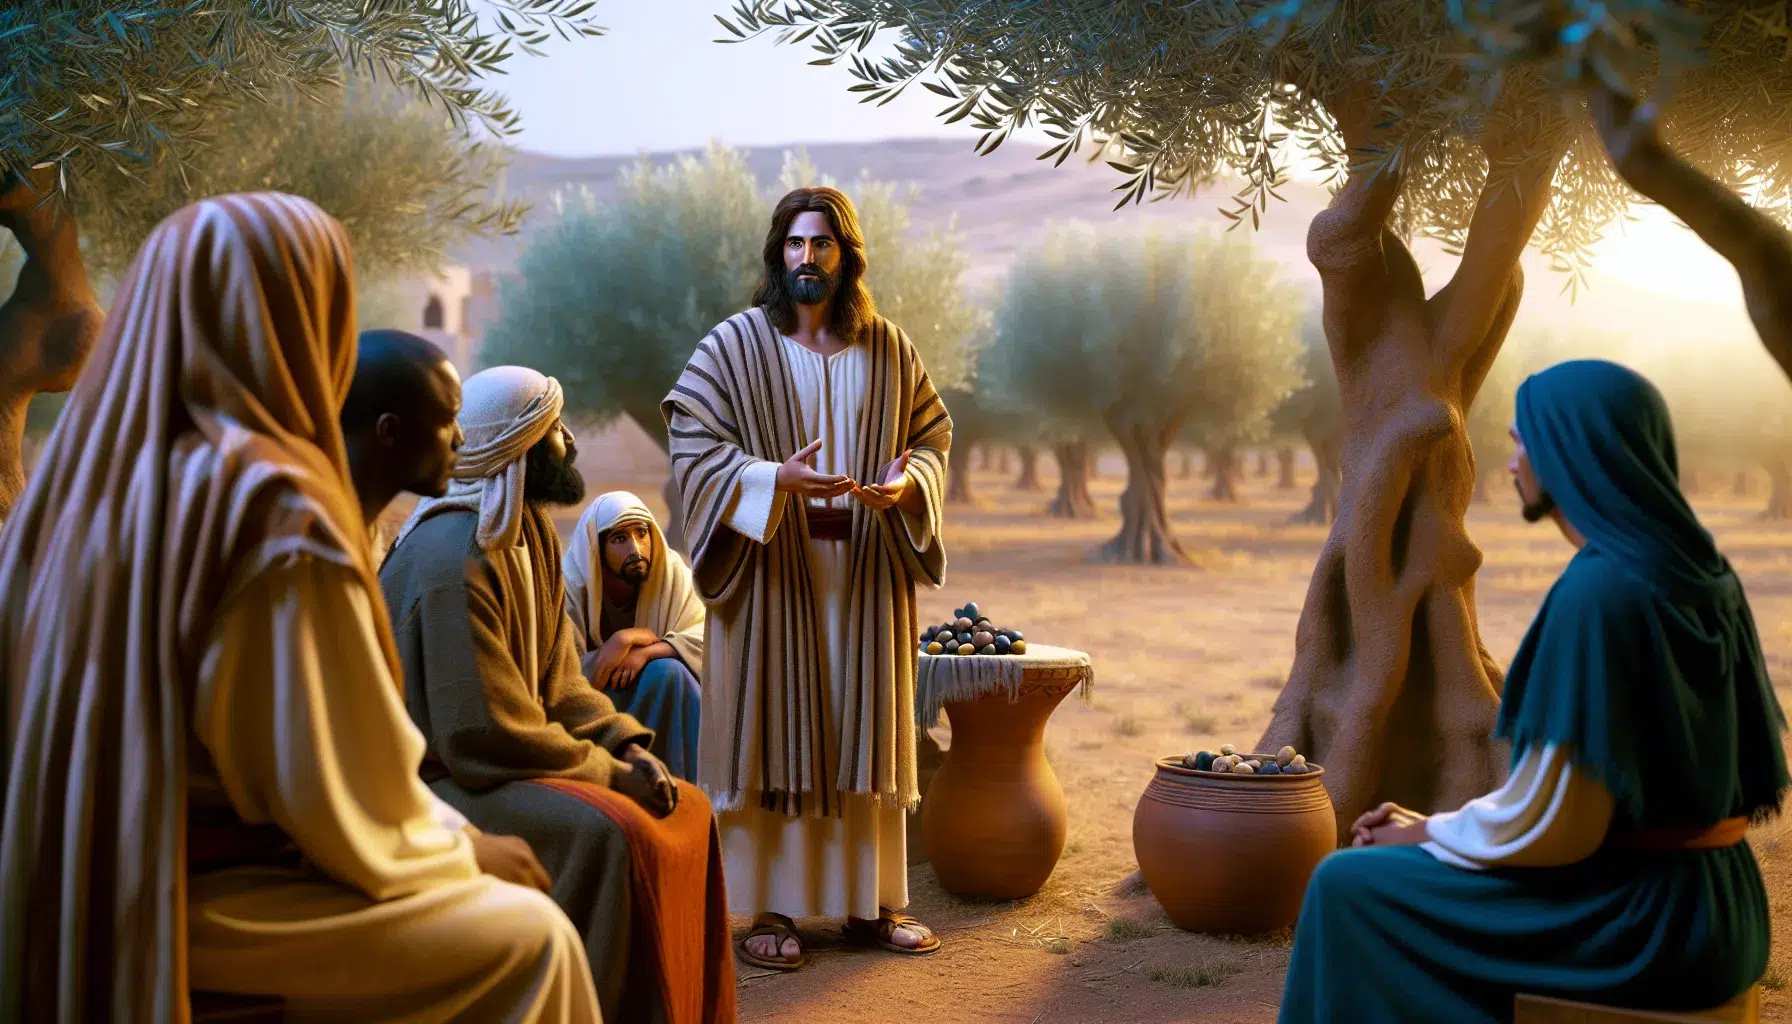 Imagen representando el mensaje de Jesús a los malhechores según la Biblia.